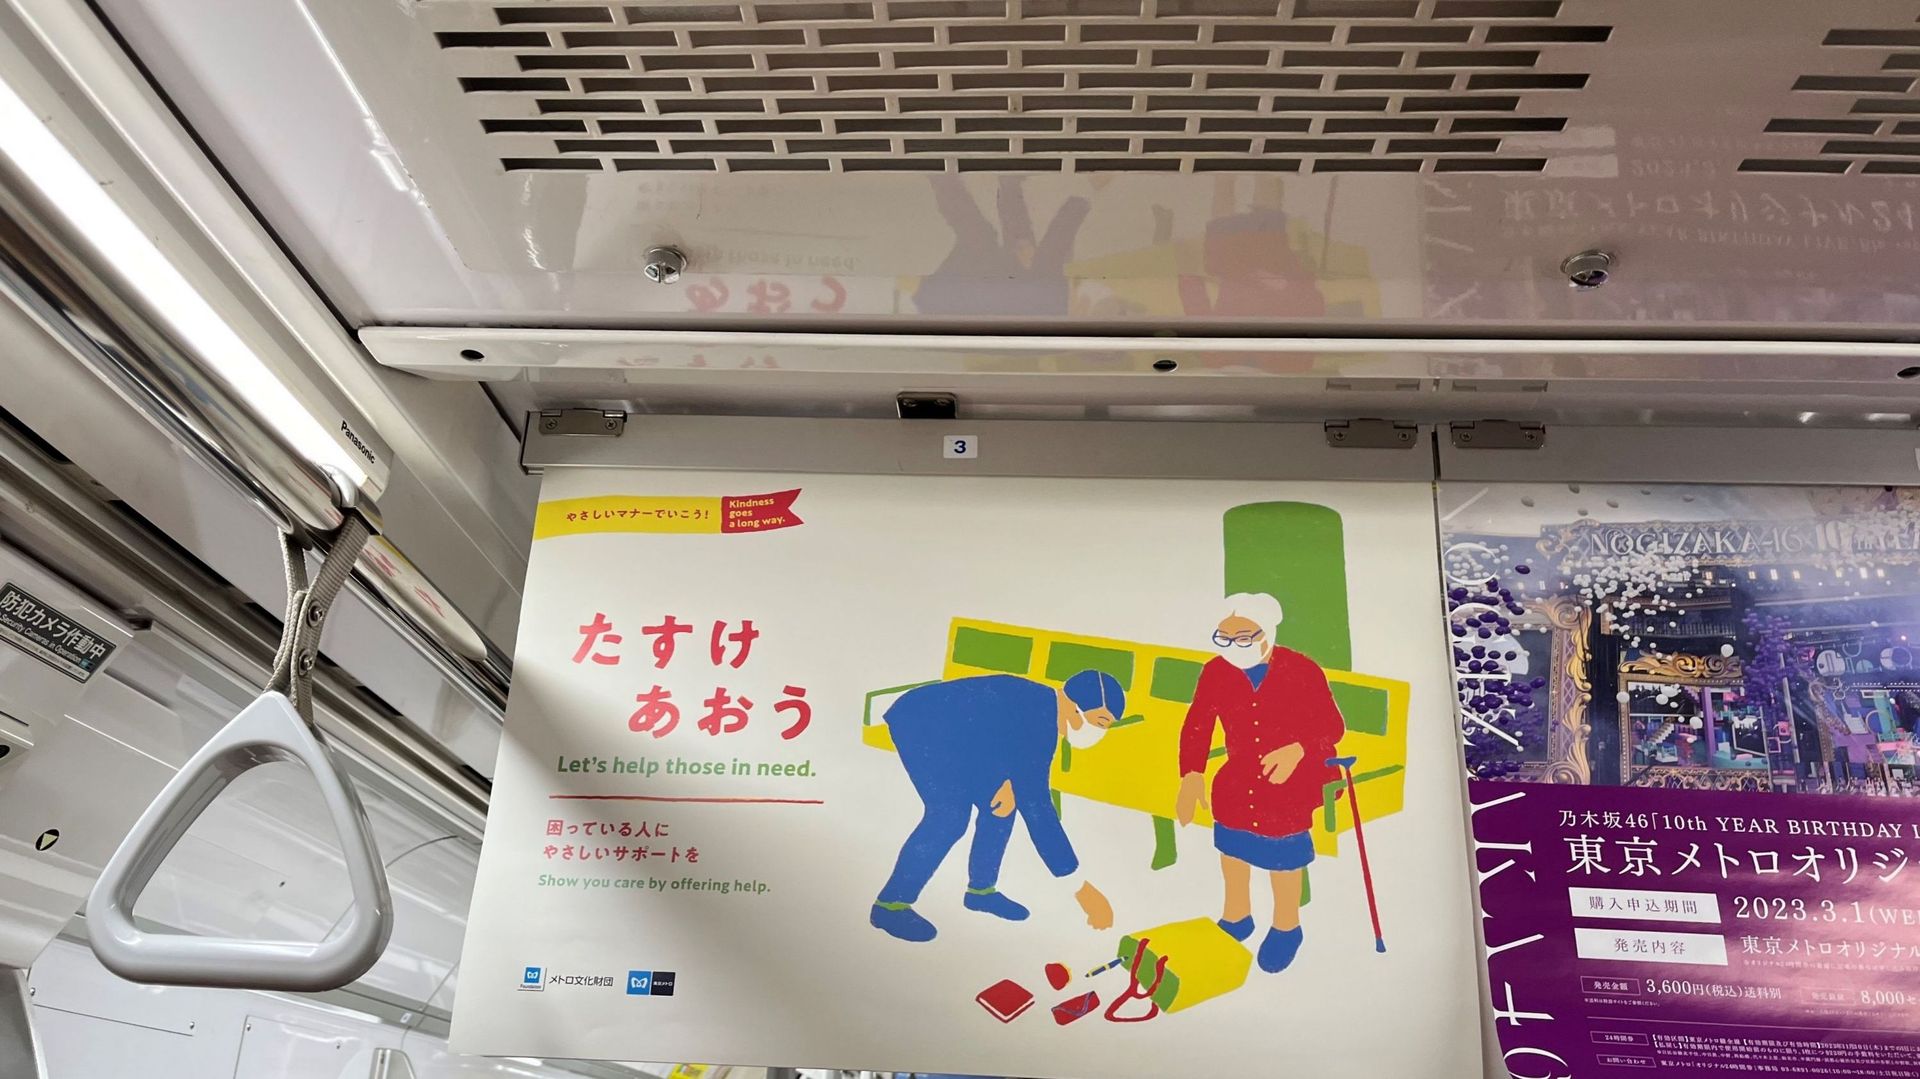 Dans le métro de Tokyo, des affiches rappellent la nécessité de prendre soin des plus vulnérables.